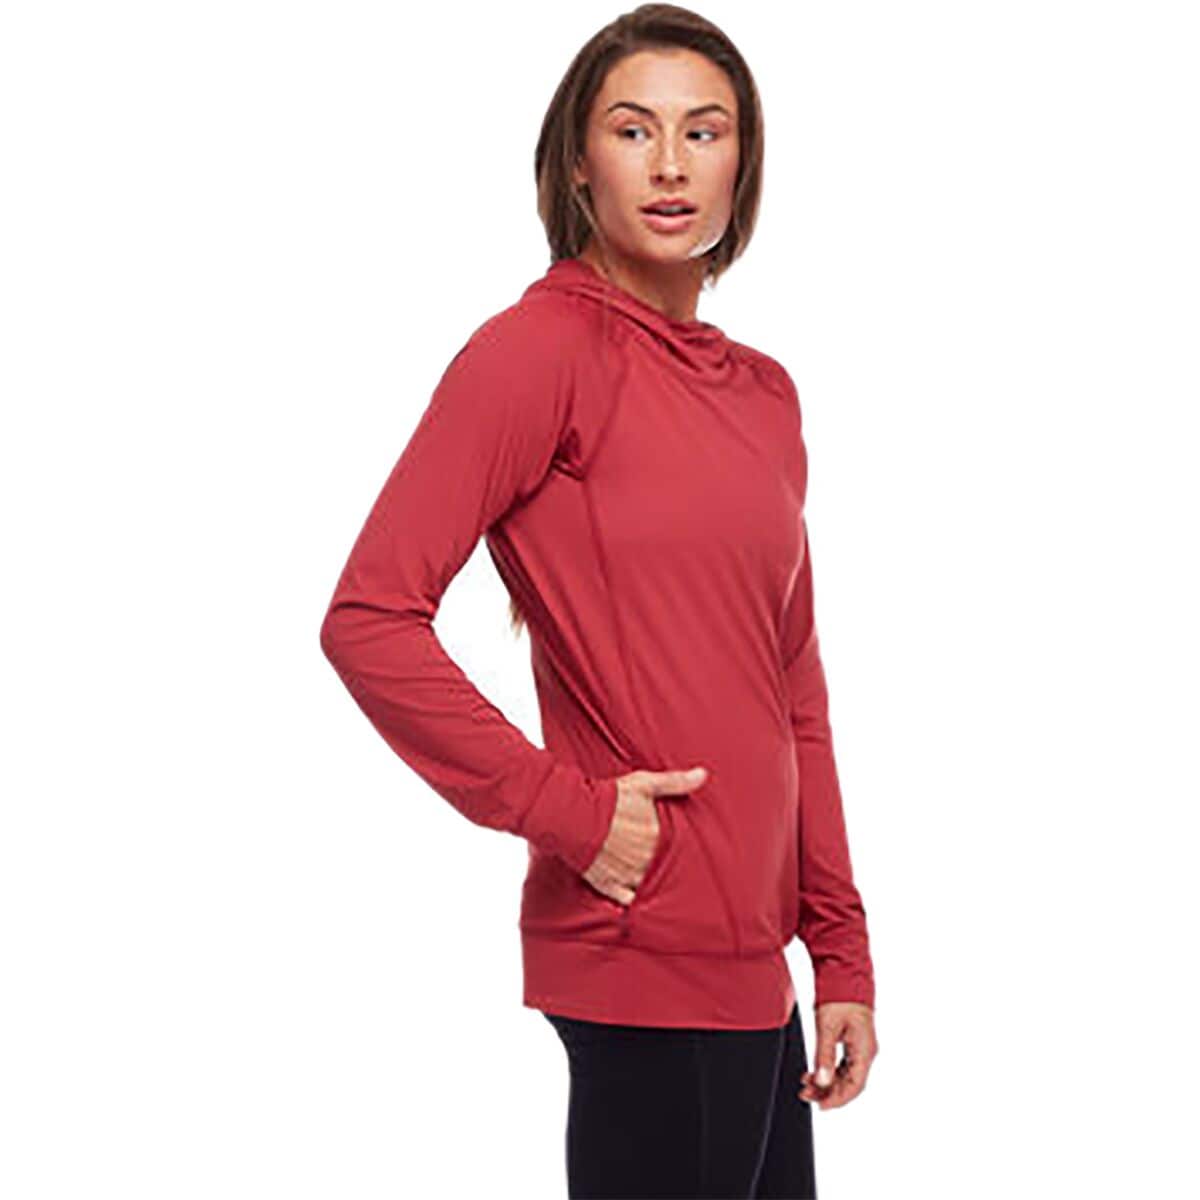 Alpenglow Hooded Long-Sleeve Shirt - Women